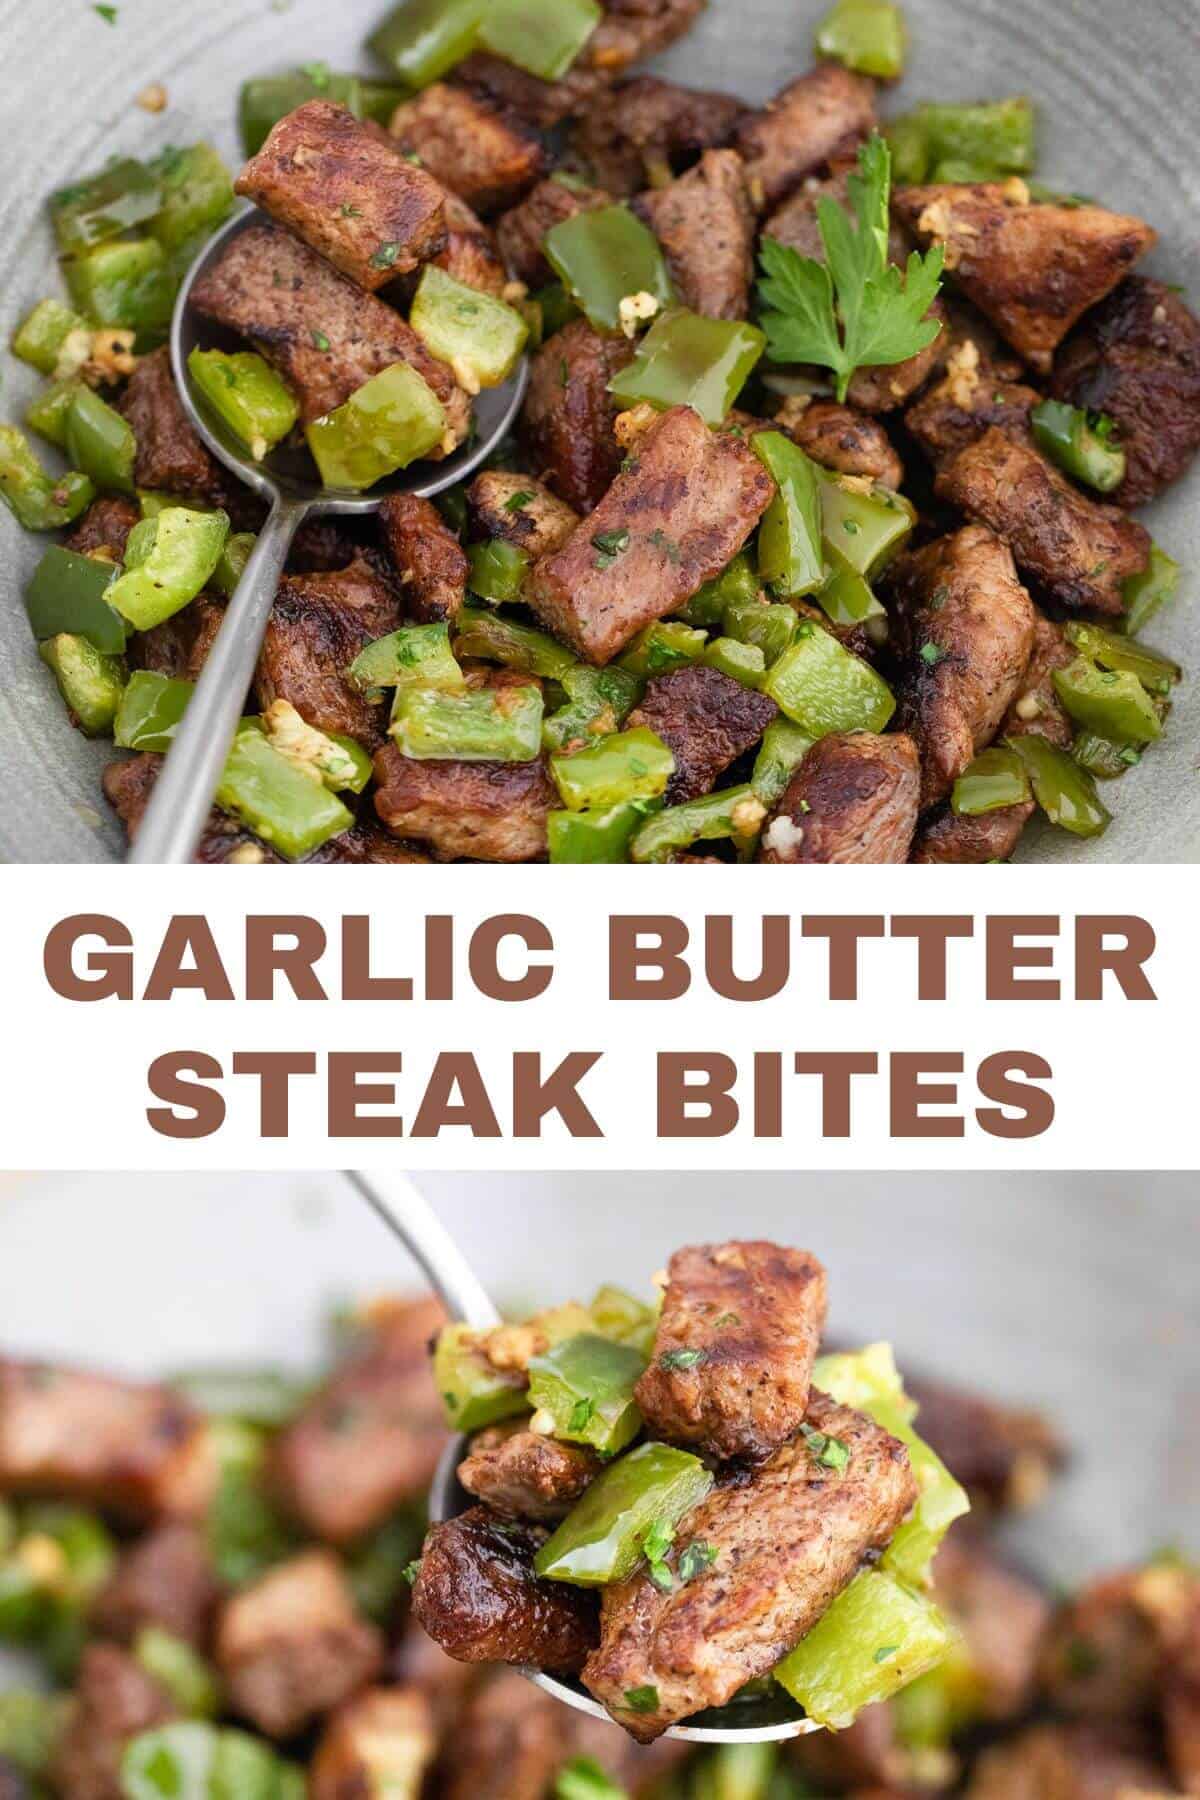 Garlic butter steak bites.